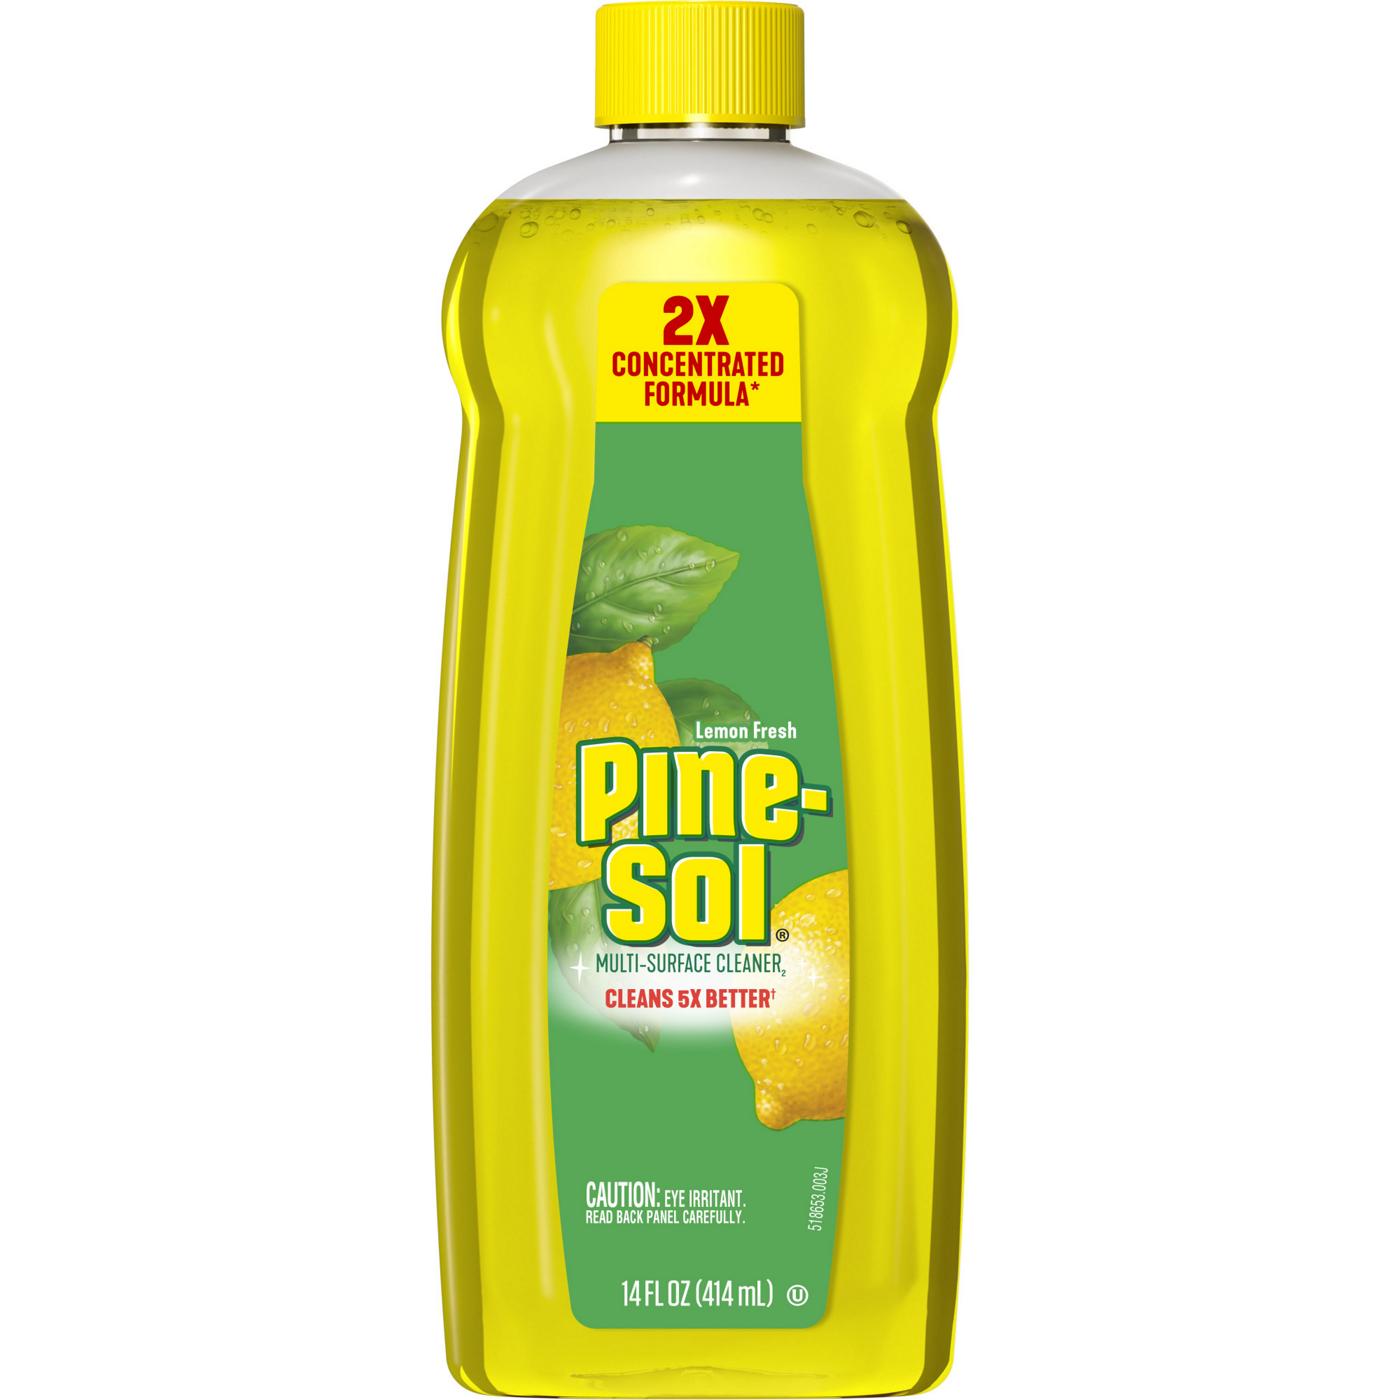 Pine-Sol Lemon Fresh Multi-Surface Cleaner; image 1 of 3